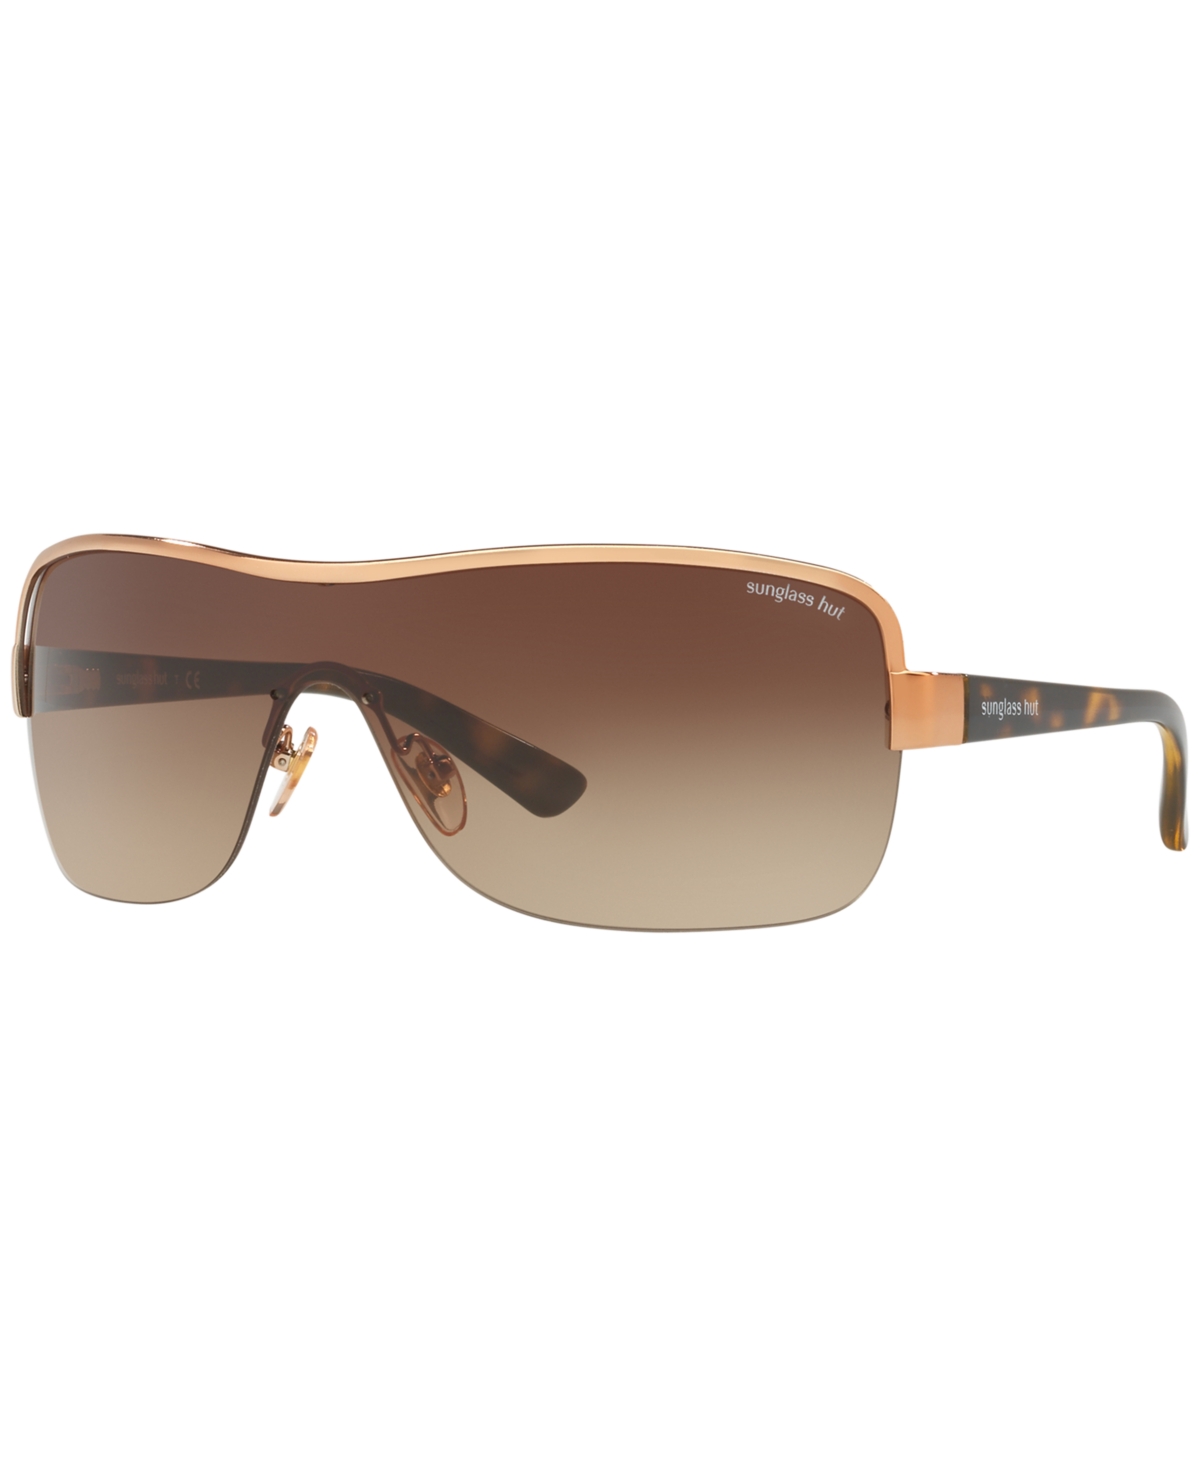 Sunglasses, HU1003 34 - BROWN/BROWN GRADIENT